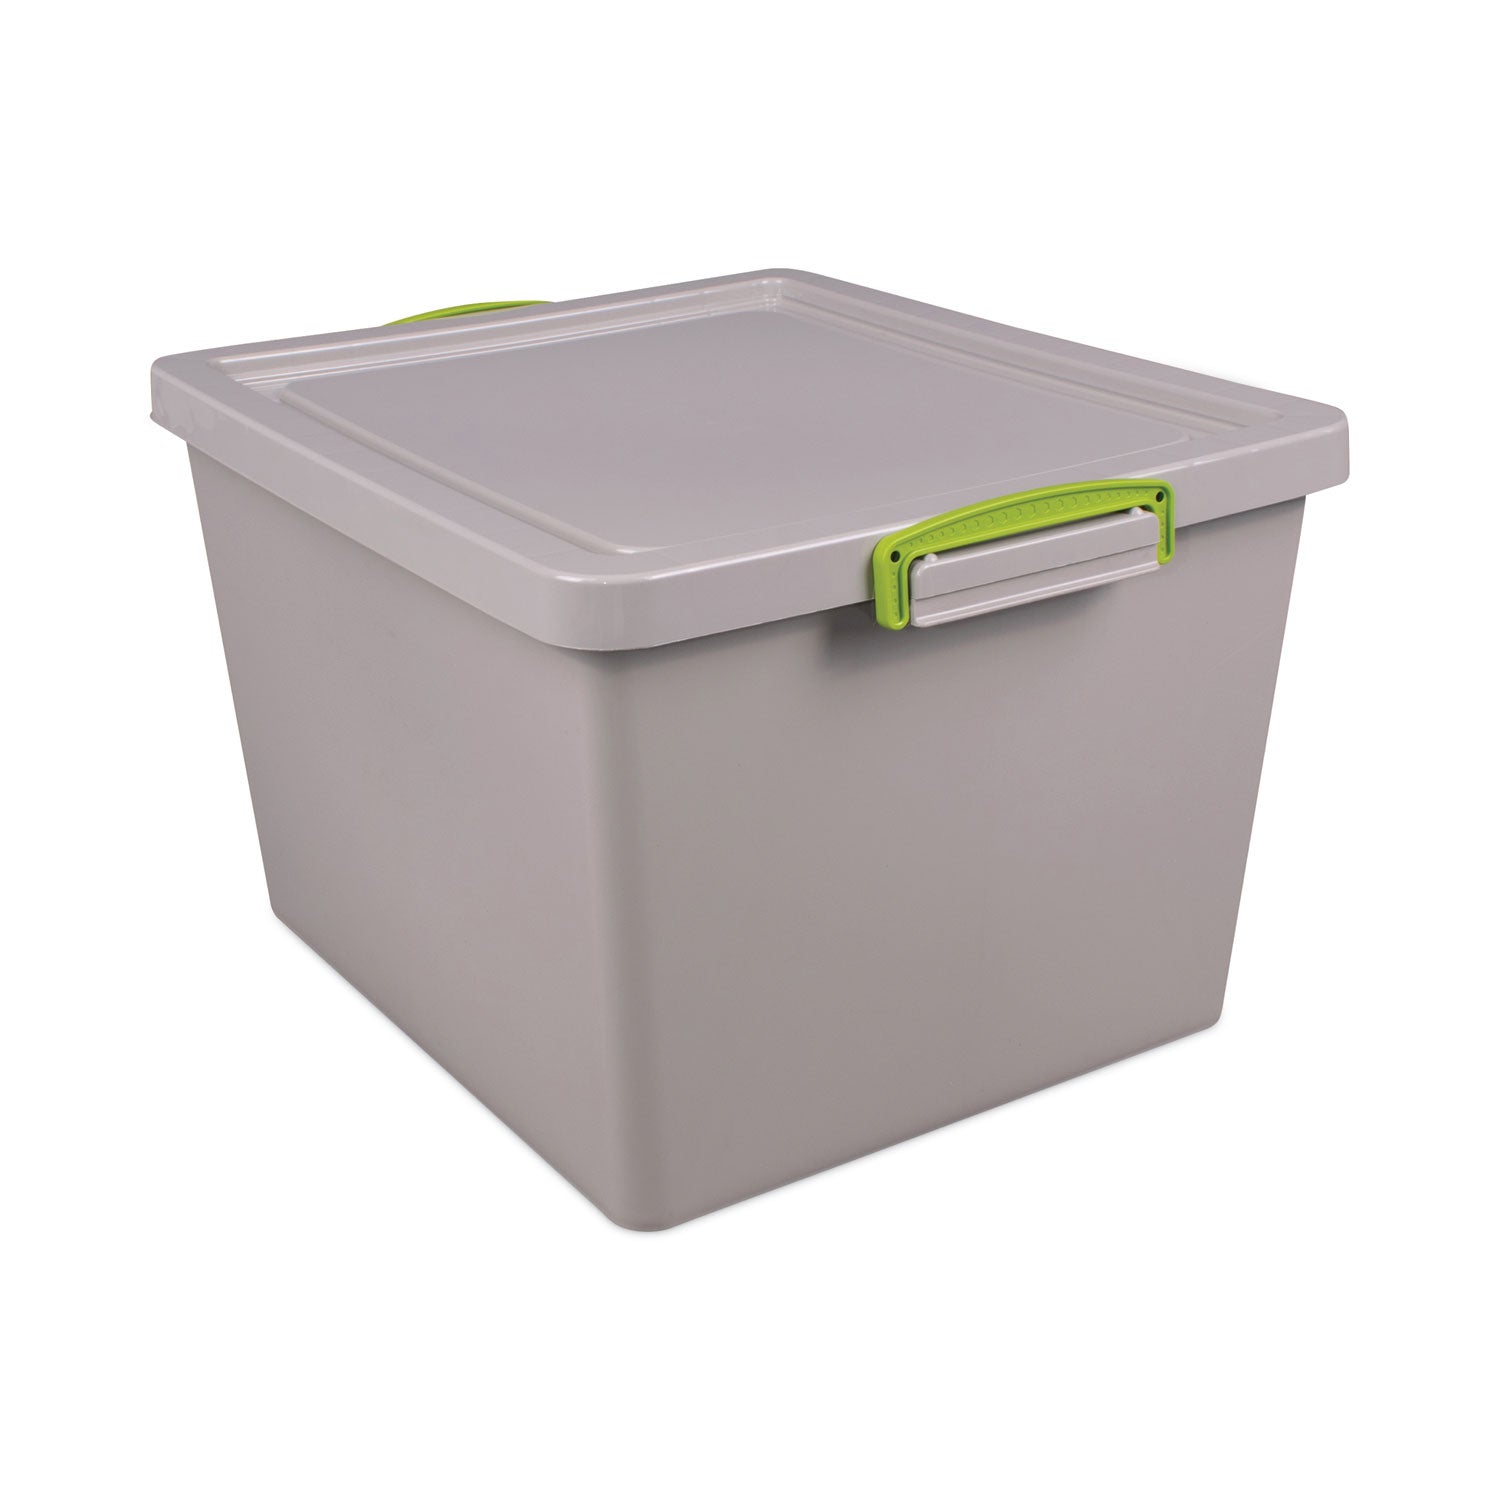 354-qt-latch-lid-storage-tote-1476-x-126-x-1043-dove-gray-green_rua335recygrey - 1